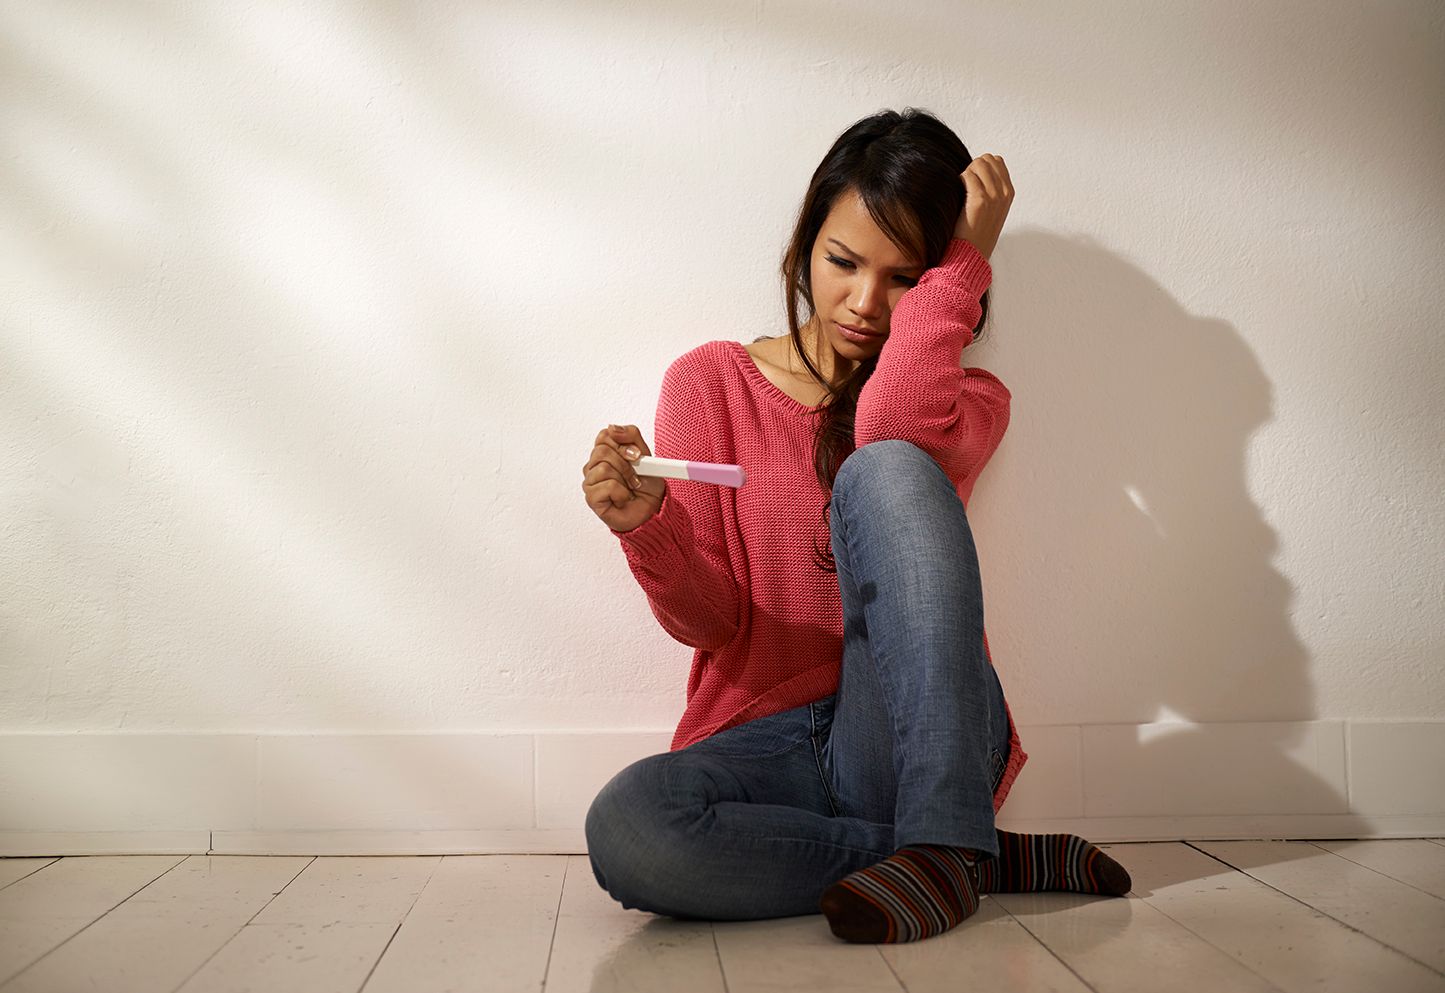 Jente har tatt graviditetstest og venter på svar om hun er gravid eller ikke